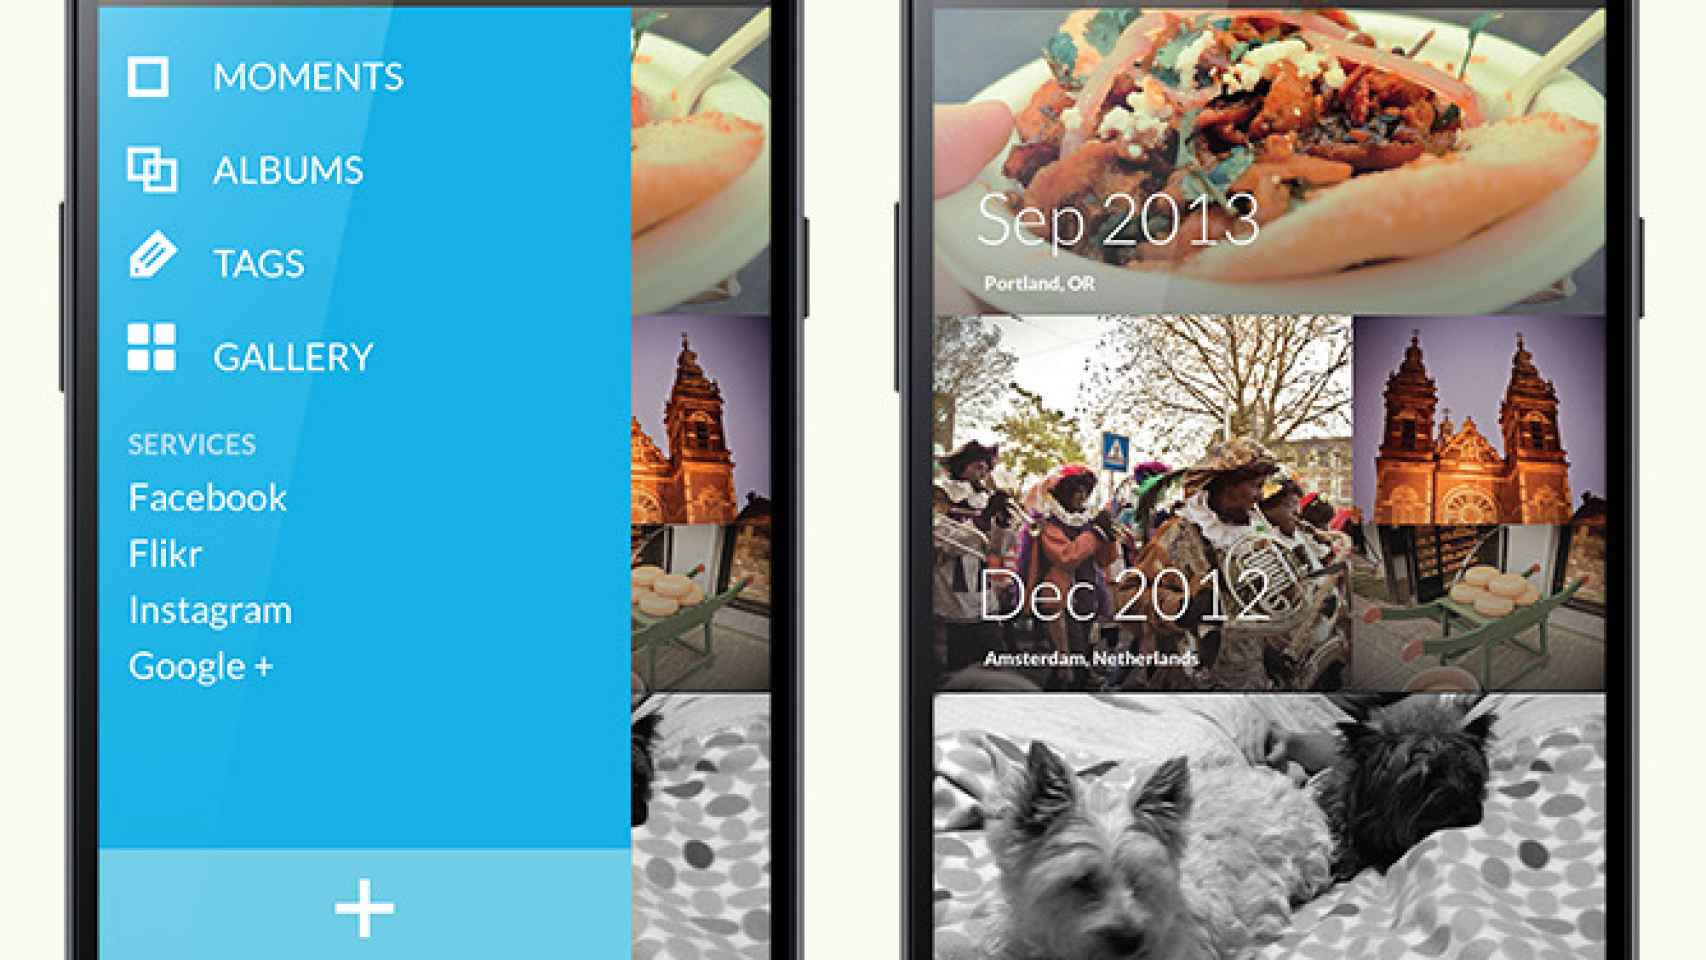 Instala las aplicaciones del OnePlus One y CyanogenMod 11S en tu Android [APK’s]